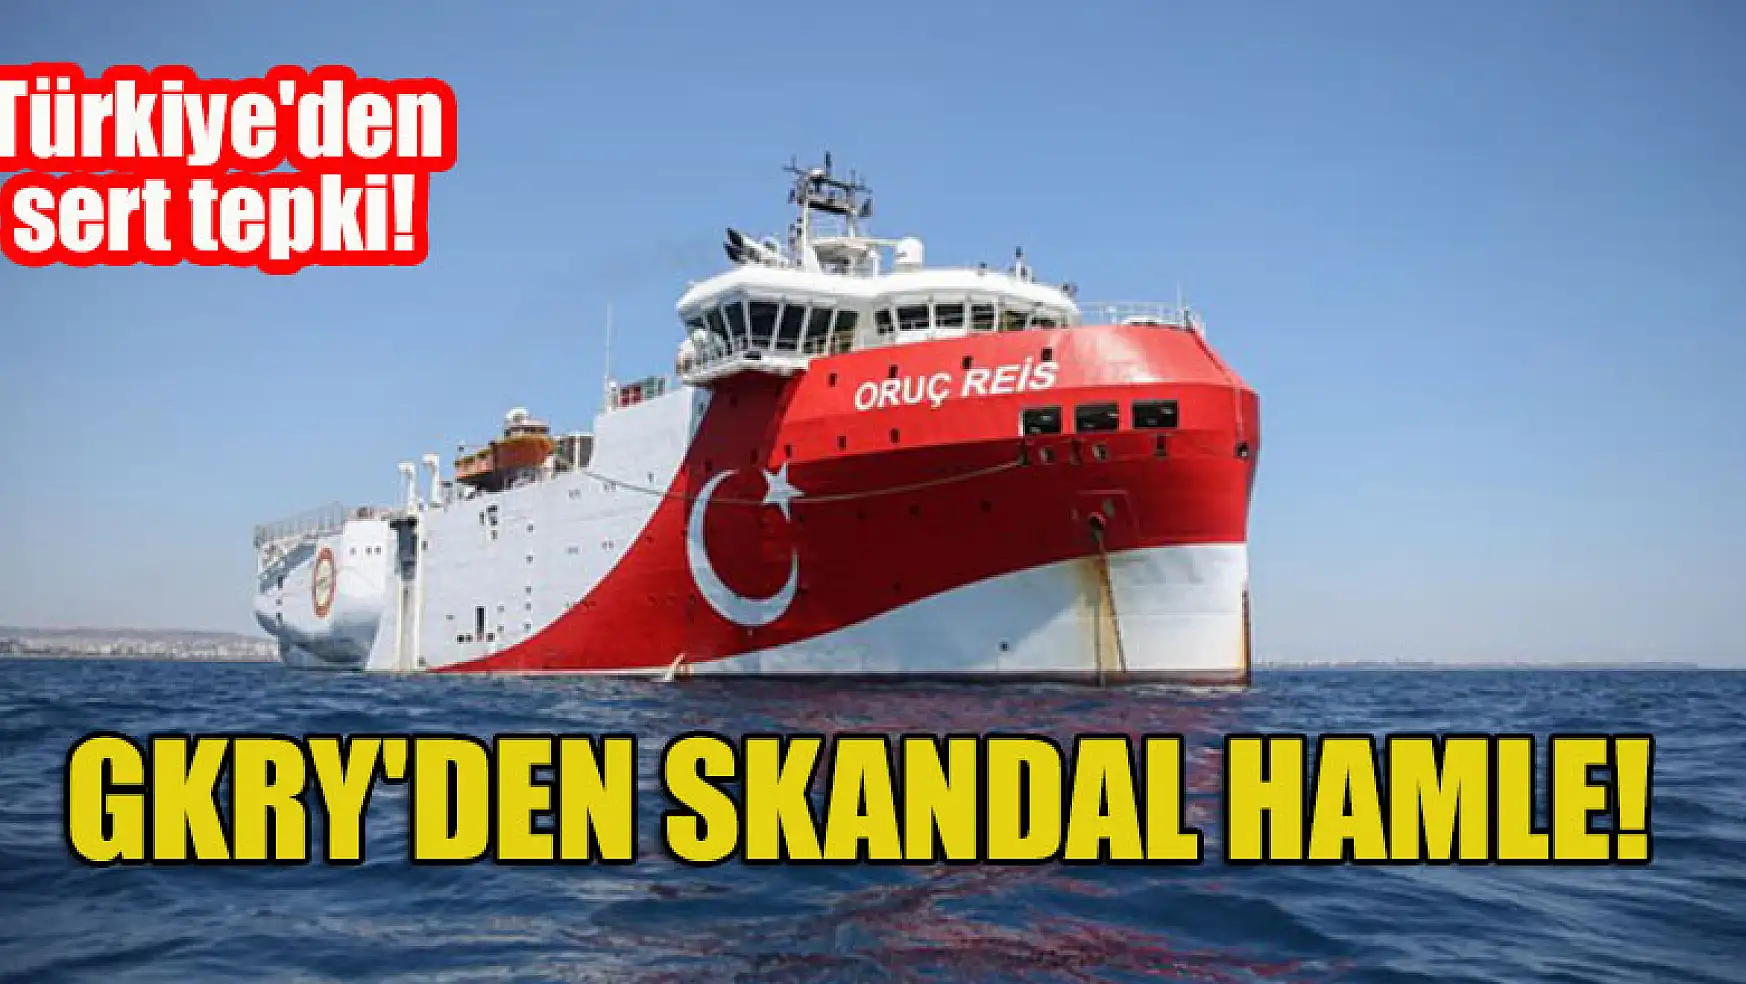 GKRY'den skandal hamle! Türkiye'den sert tepki!